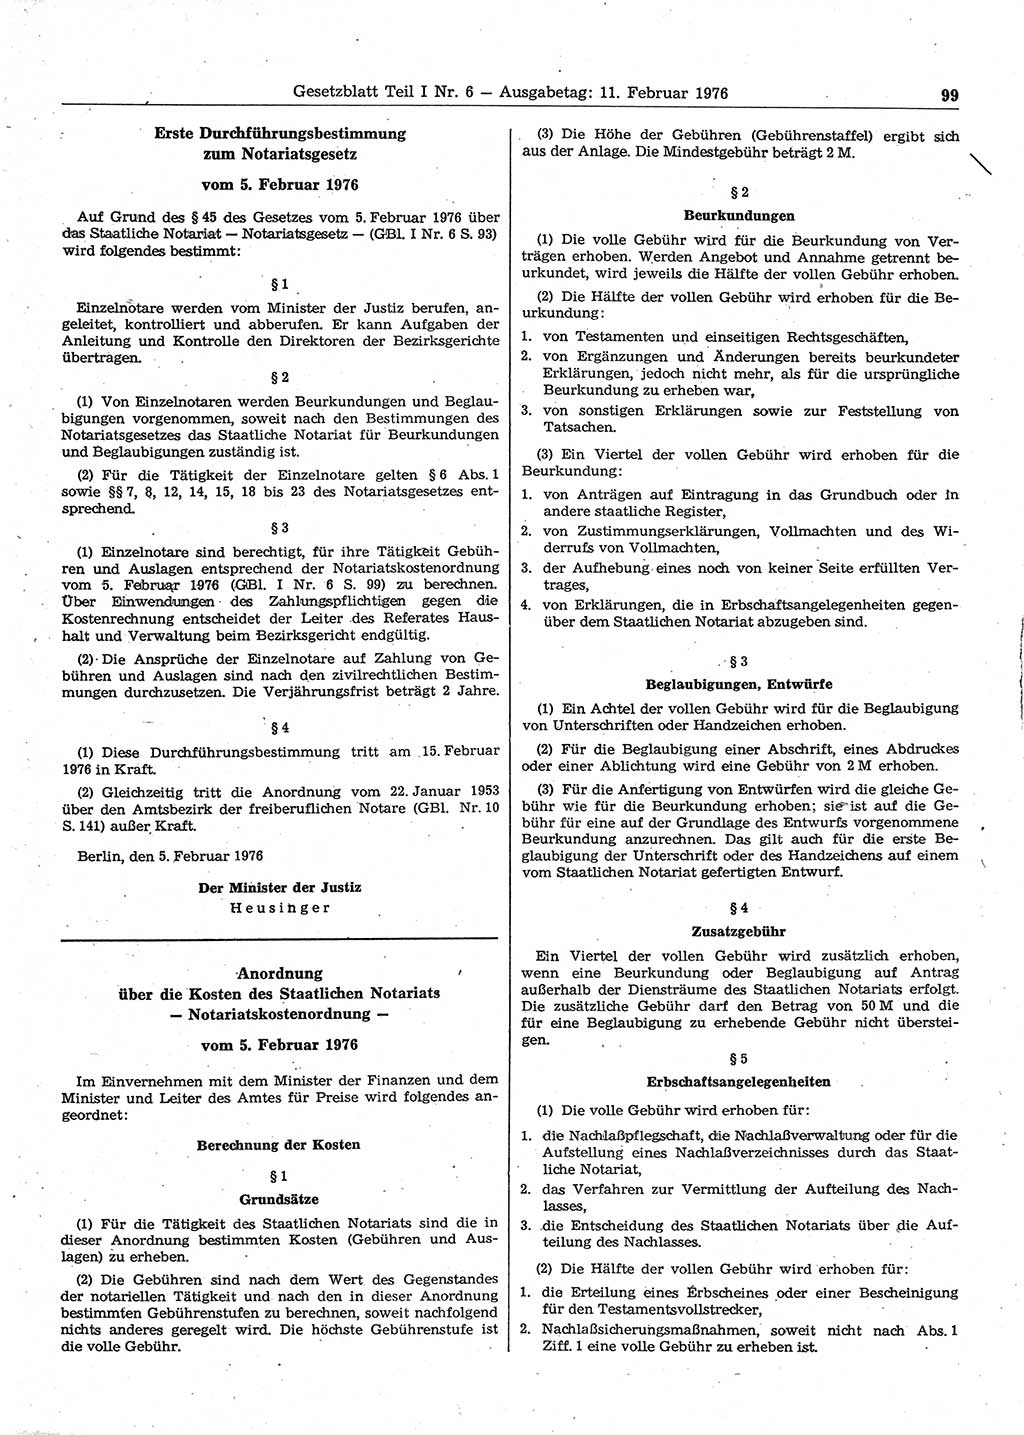 Gesetzblatt (GBl.) der Deutschen Demokratischen Republik (DDR) Teil Ⅰ 1976, Seite 99 (GBl. DDR Ⅰ 1976, S. 99)